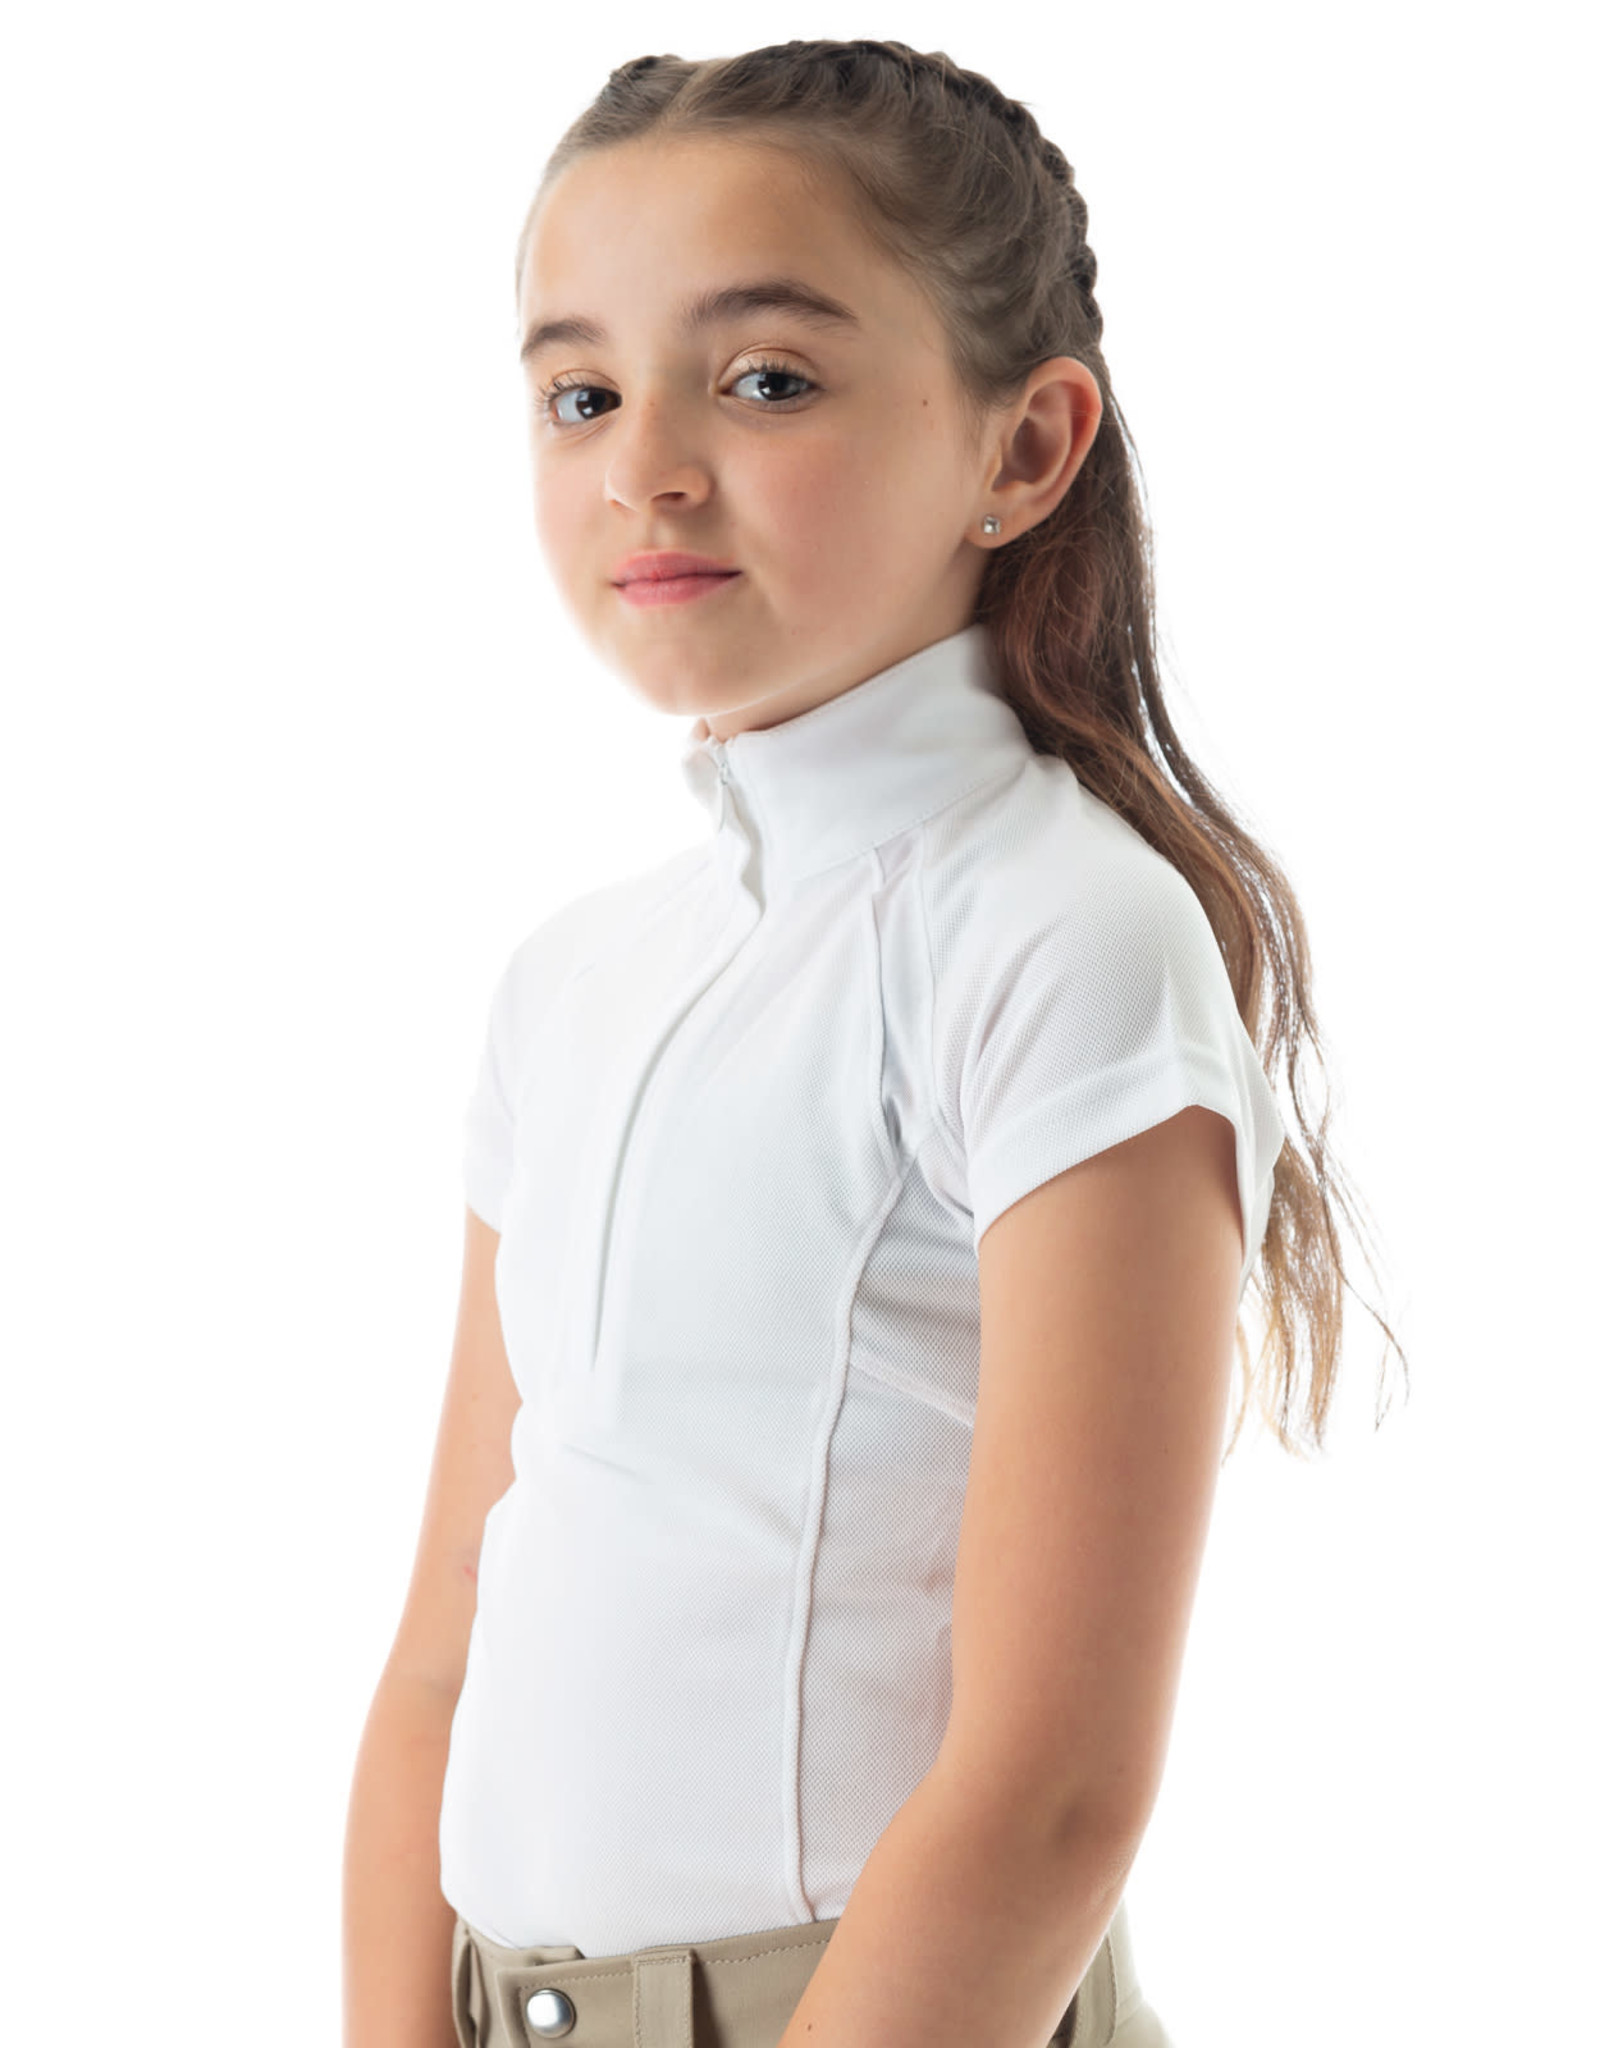 EQUINAVIA Lotta Kids Short Sleeved Show Shirt - White